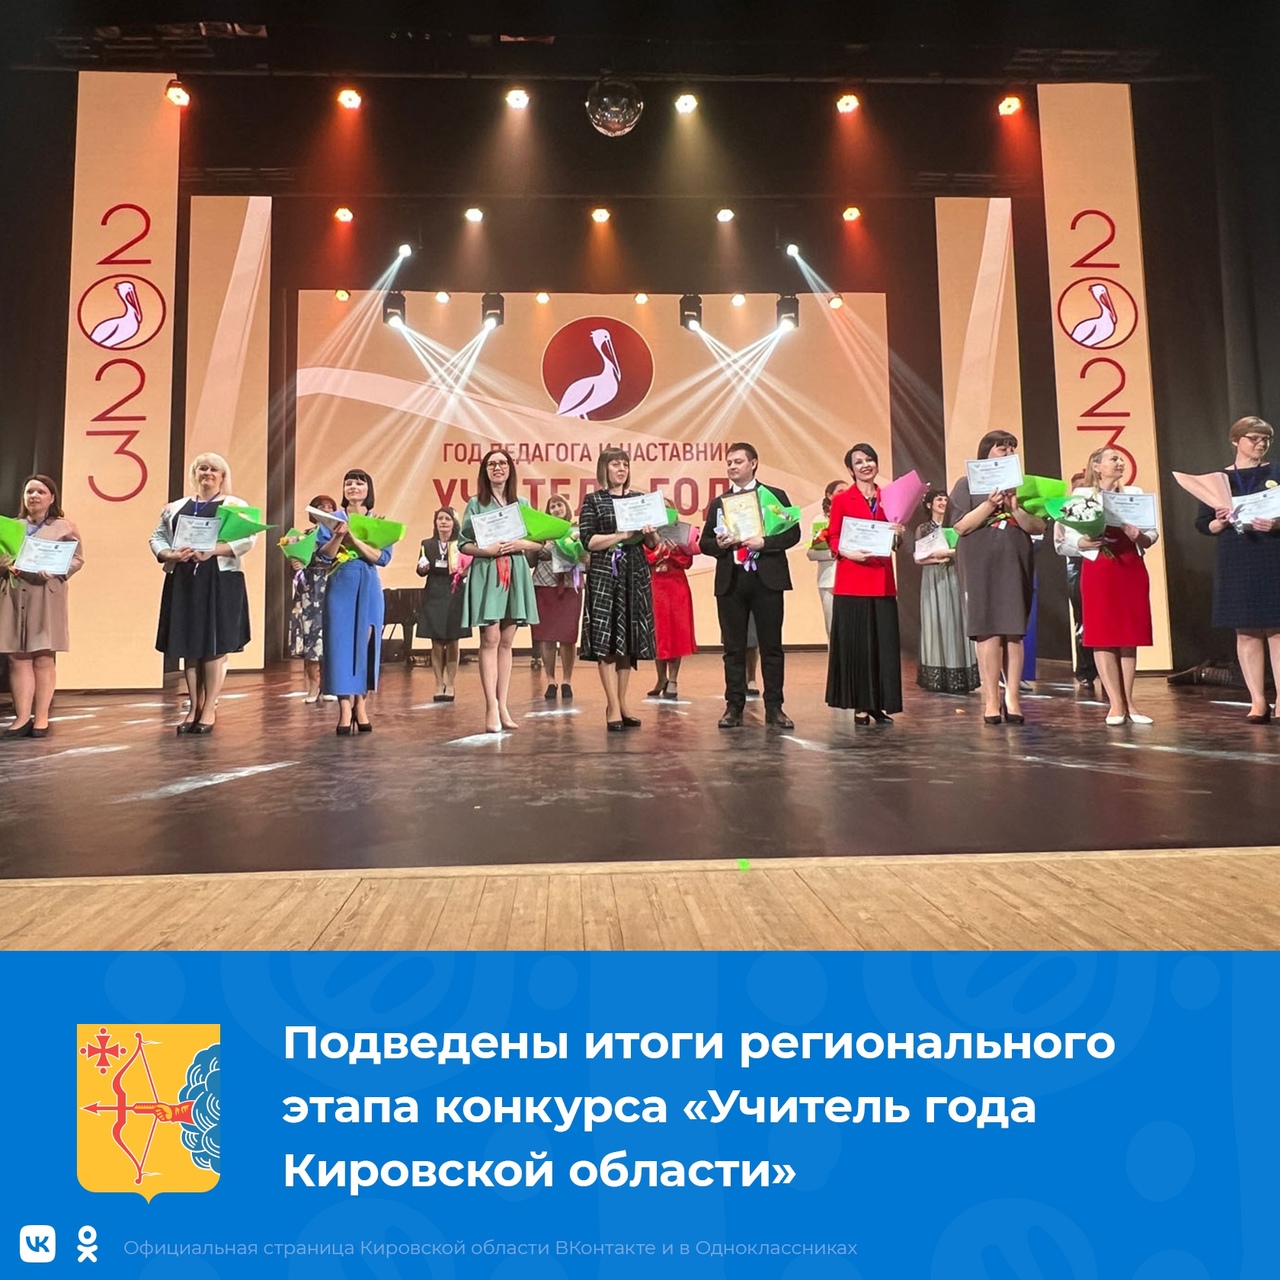 Подведены итоги регионального этапа конкурса «Учитель года Кировской области»